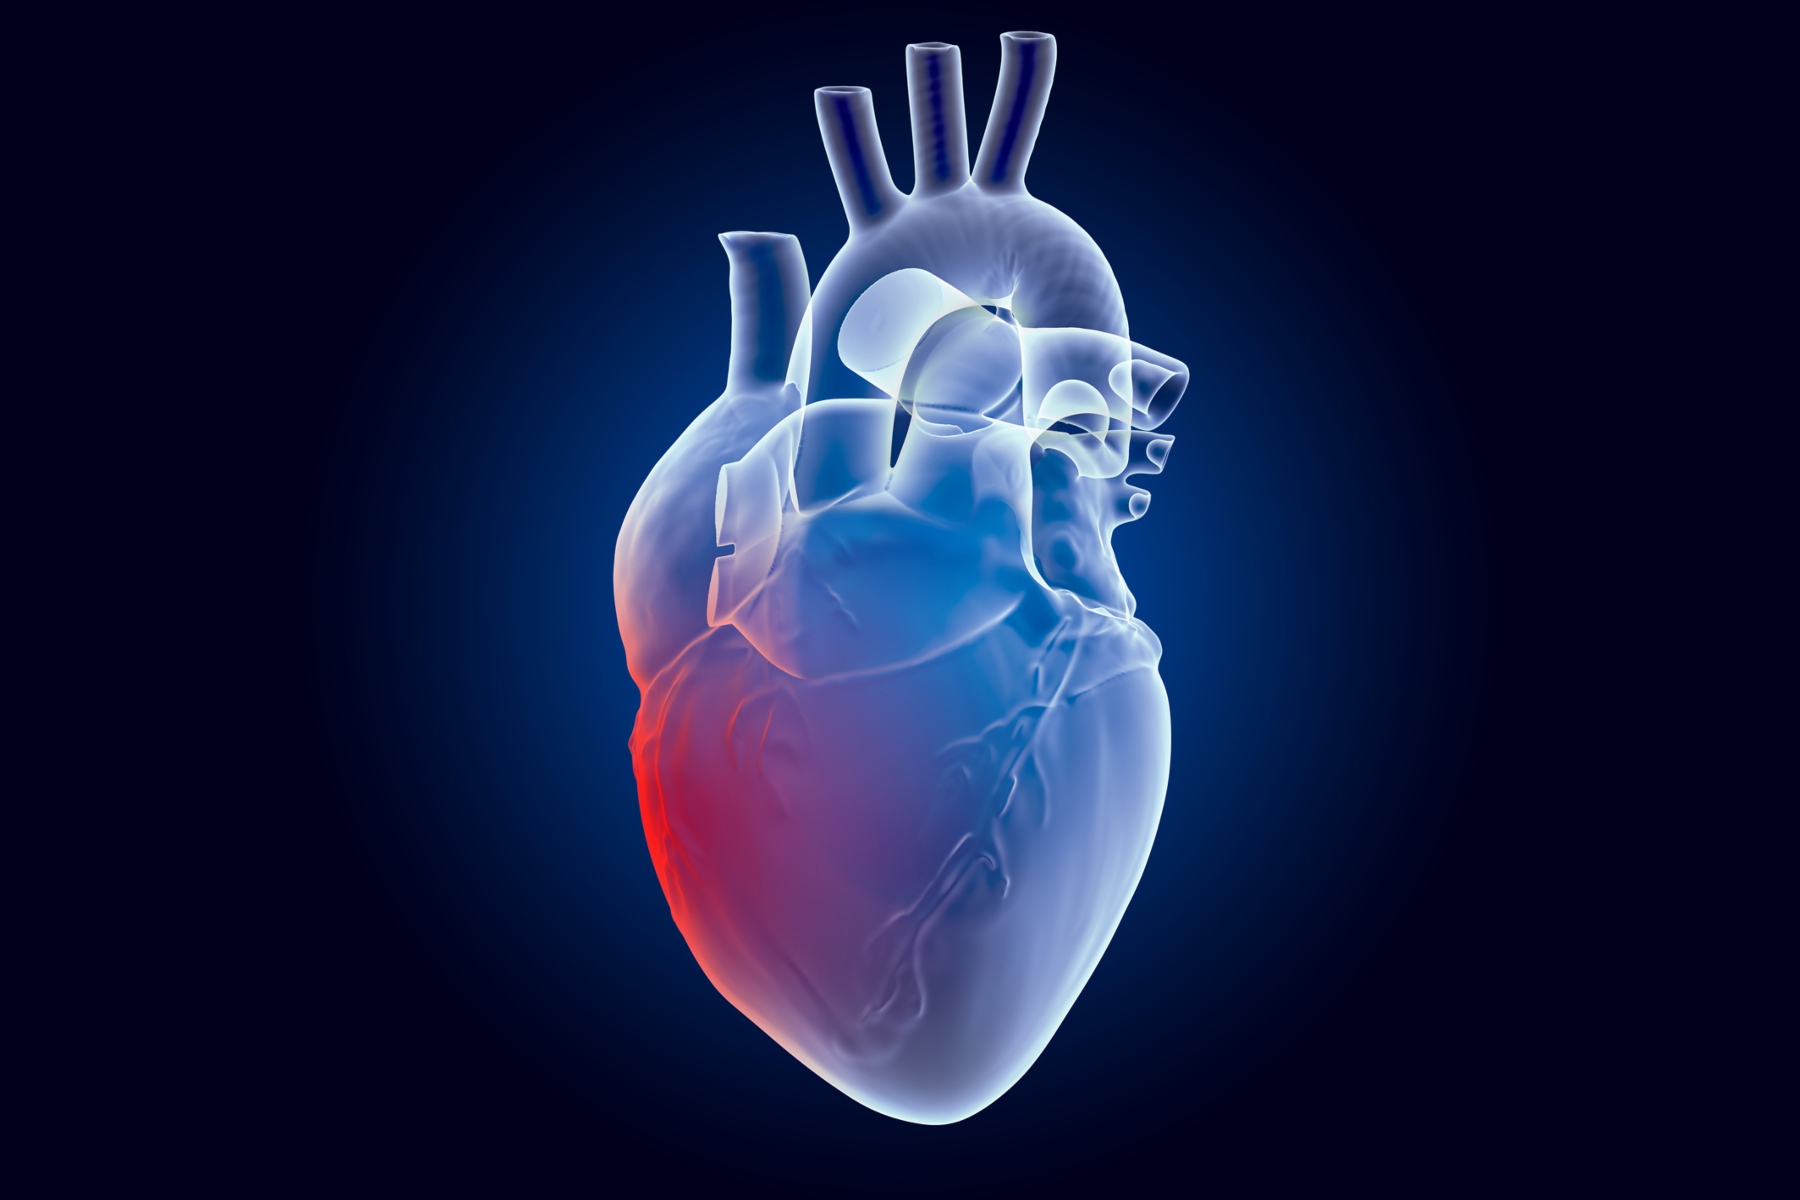 Πώς να μειώσετε τον κίνδυνο καρδιακής προσβολής με μία κίνηση;